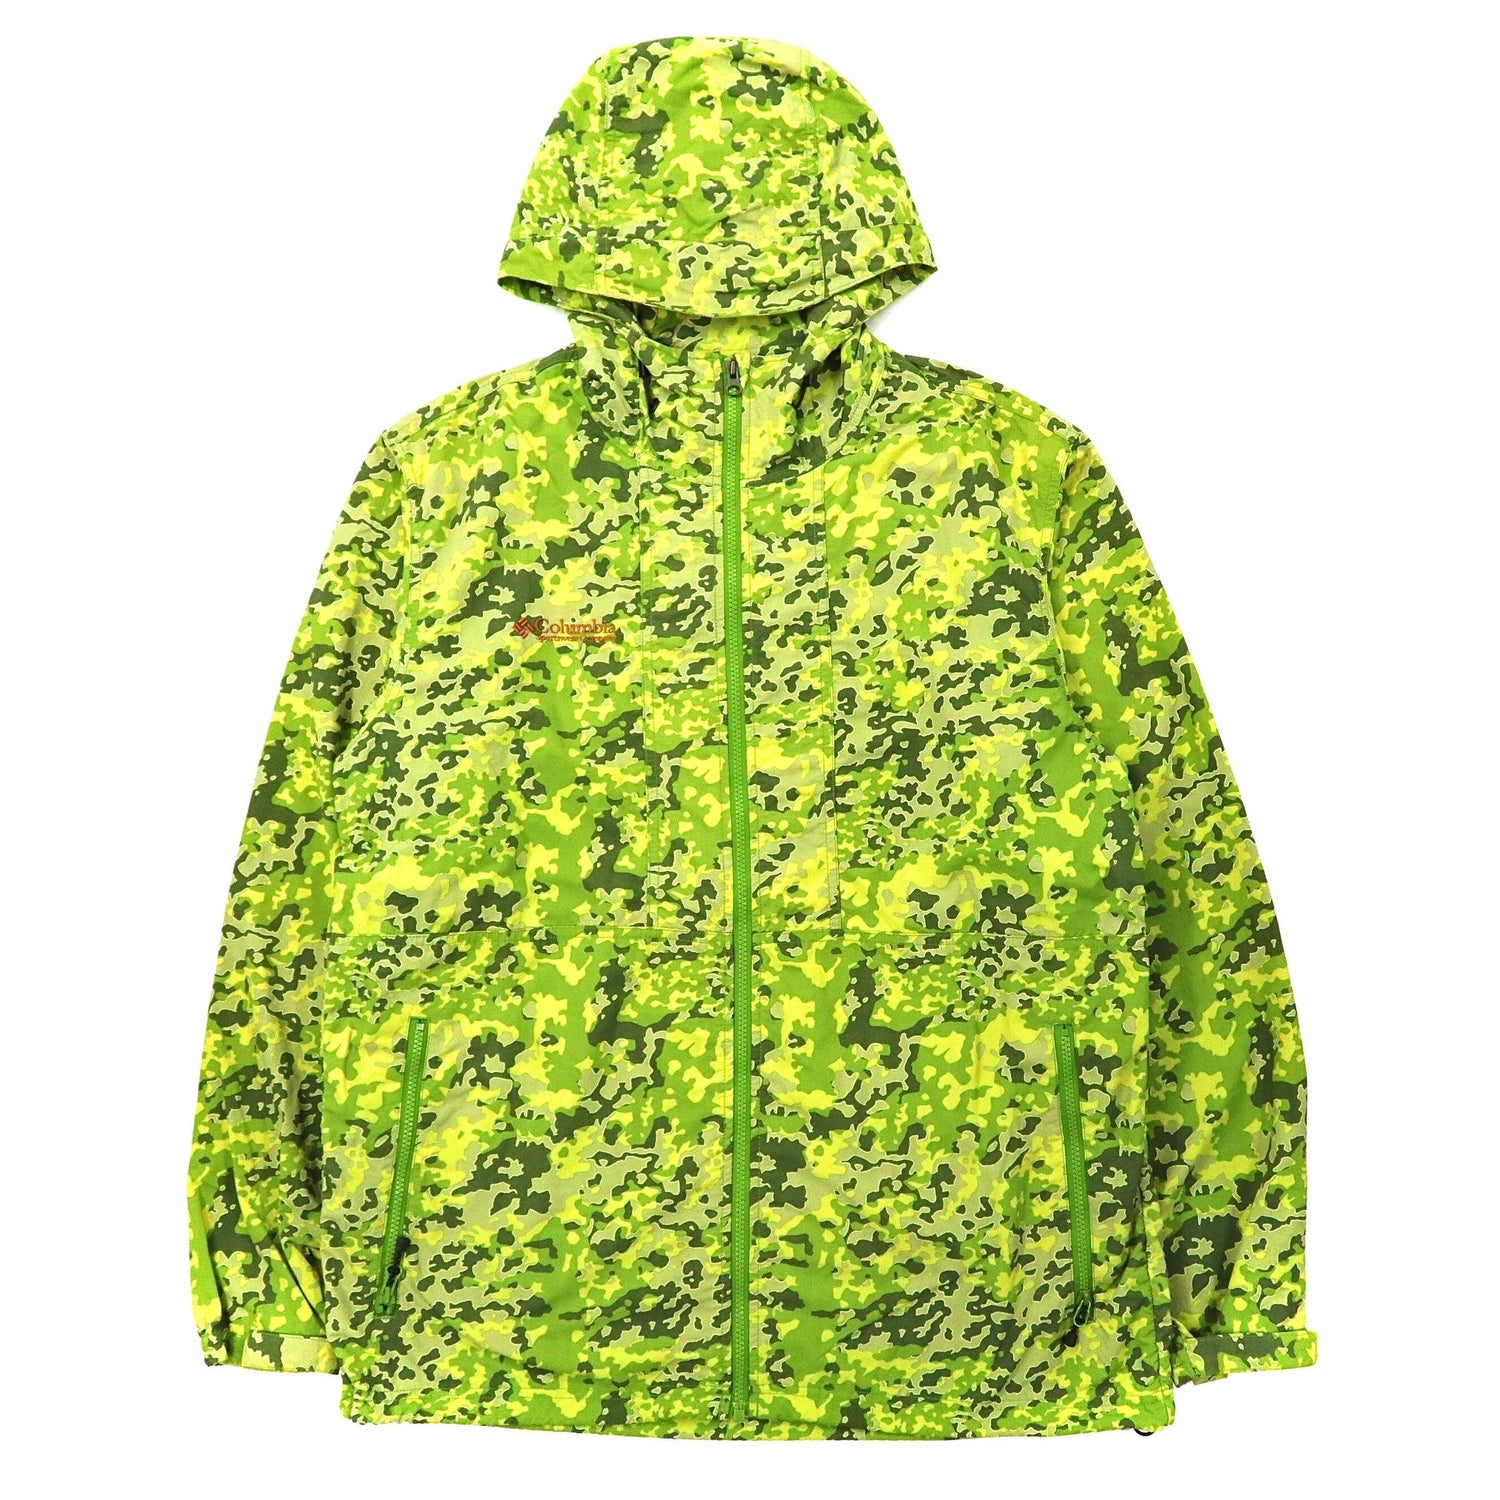 COLUMBIA Haisen Jacket Nylon HOODIE XL Green Camouflage XCO Nylon PM3356